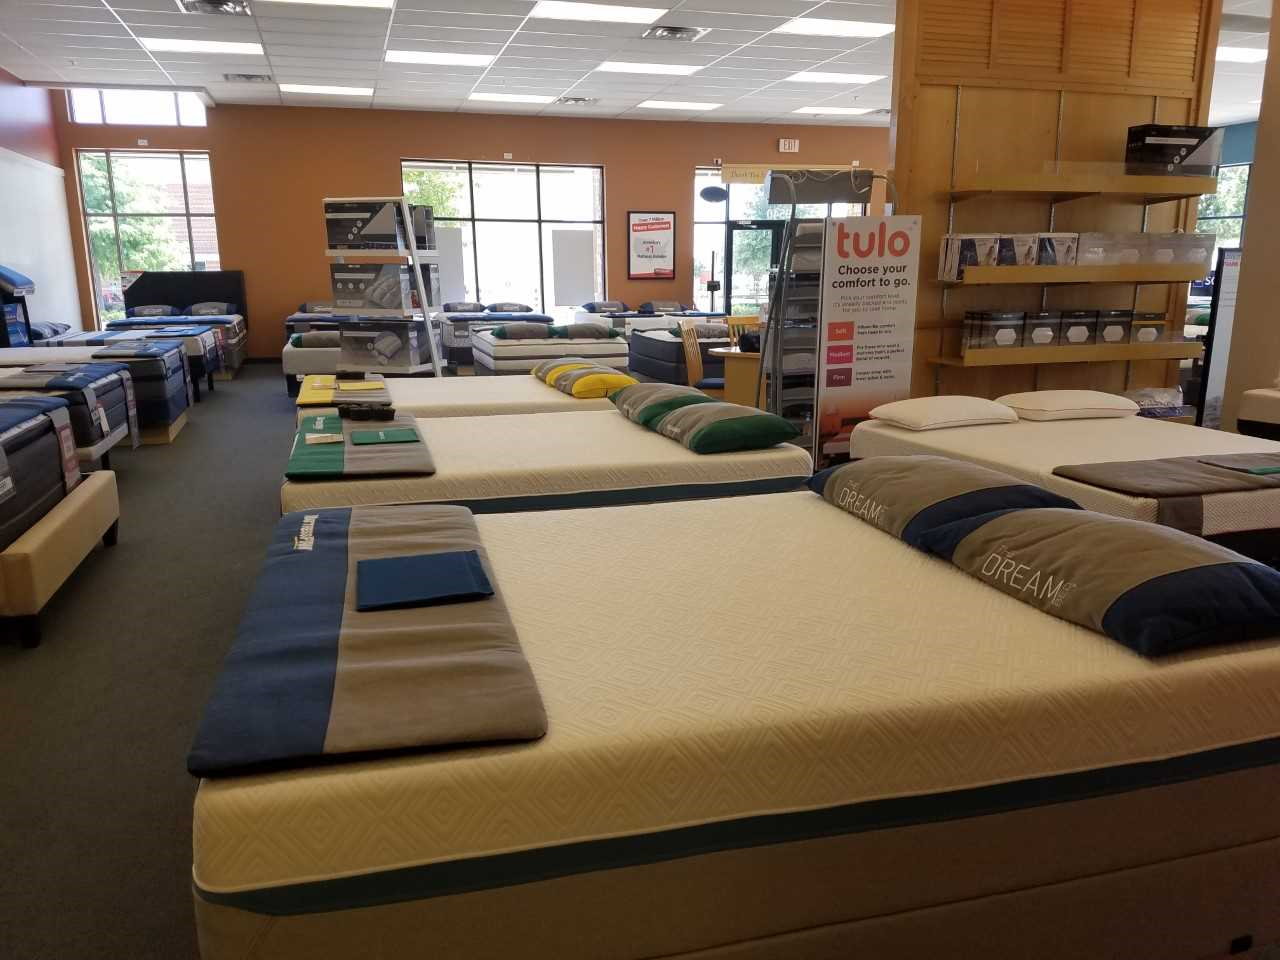 mattress firm town center mall kennesaw